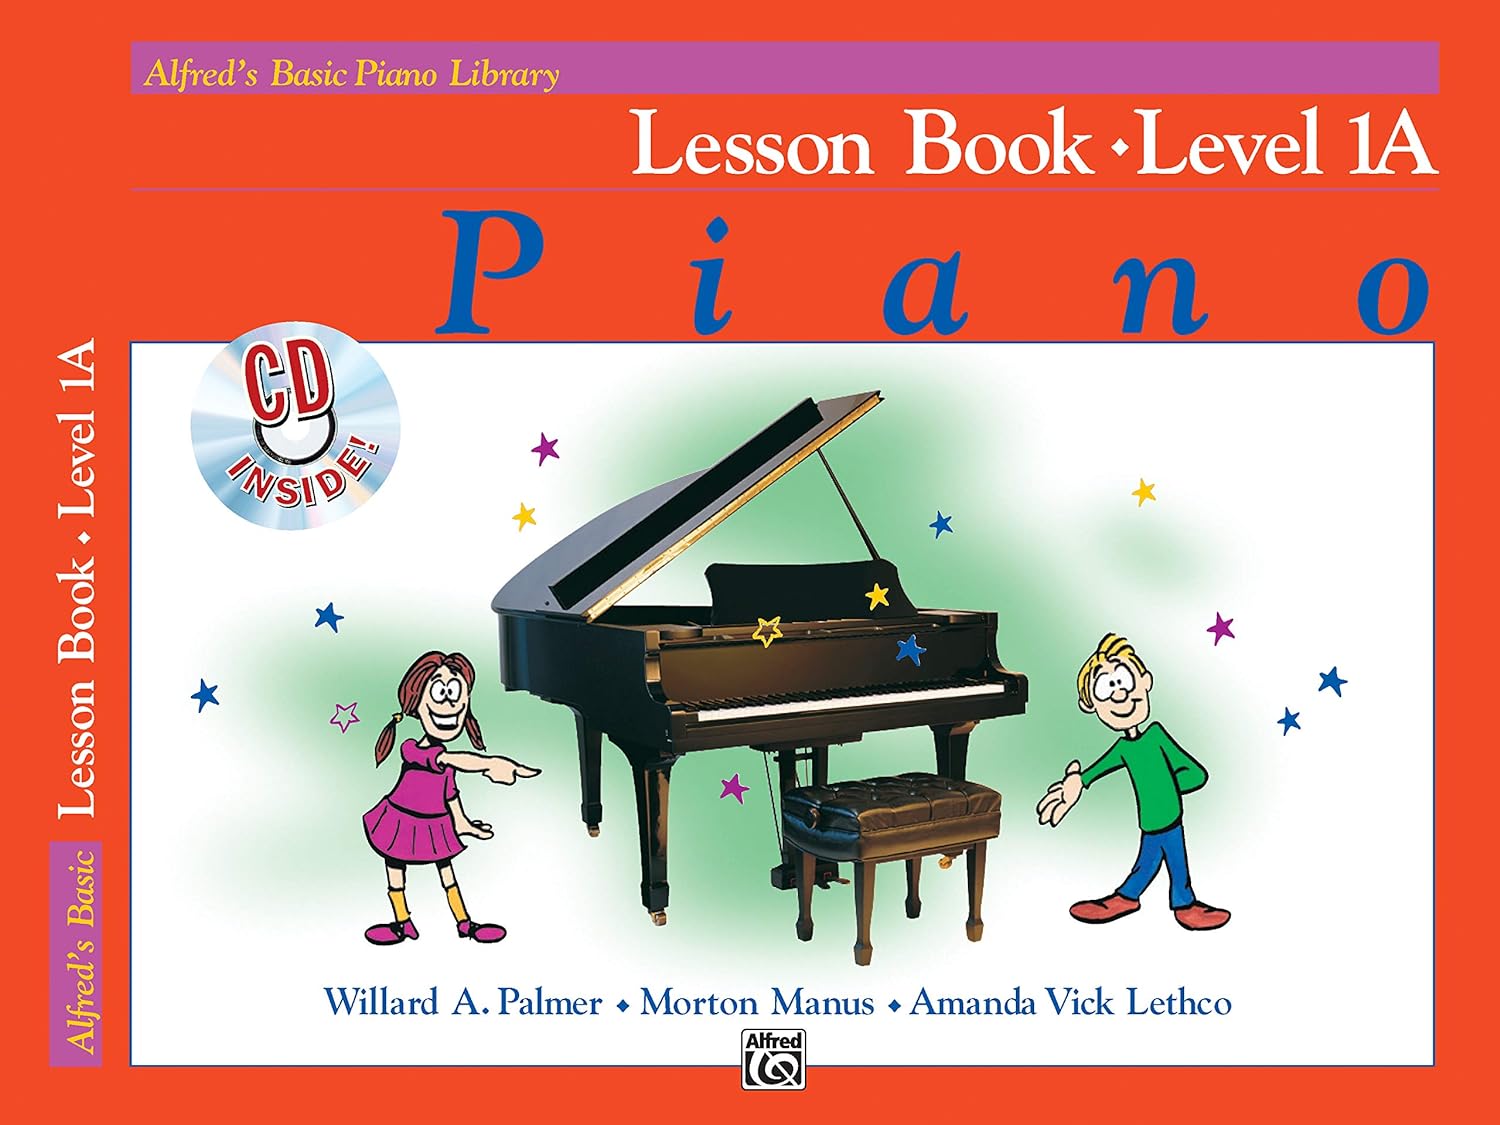 Alfred's Piano book